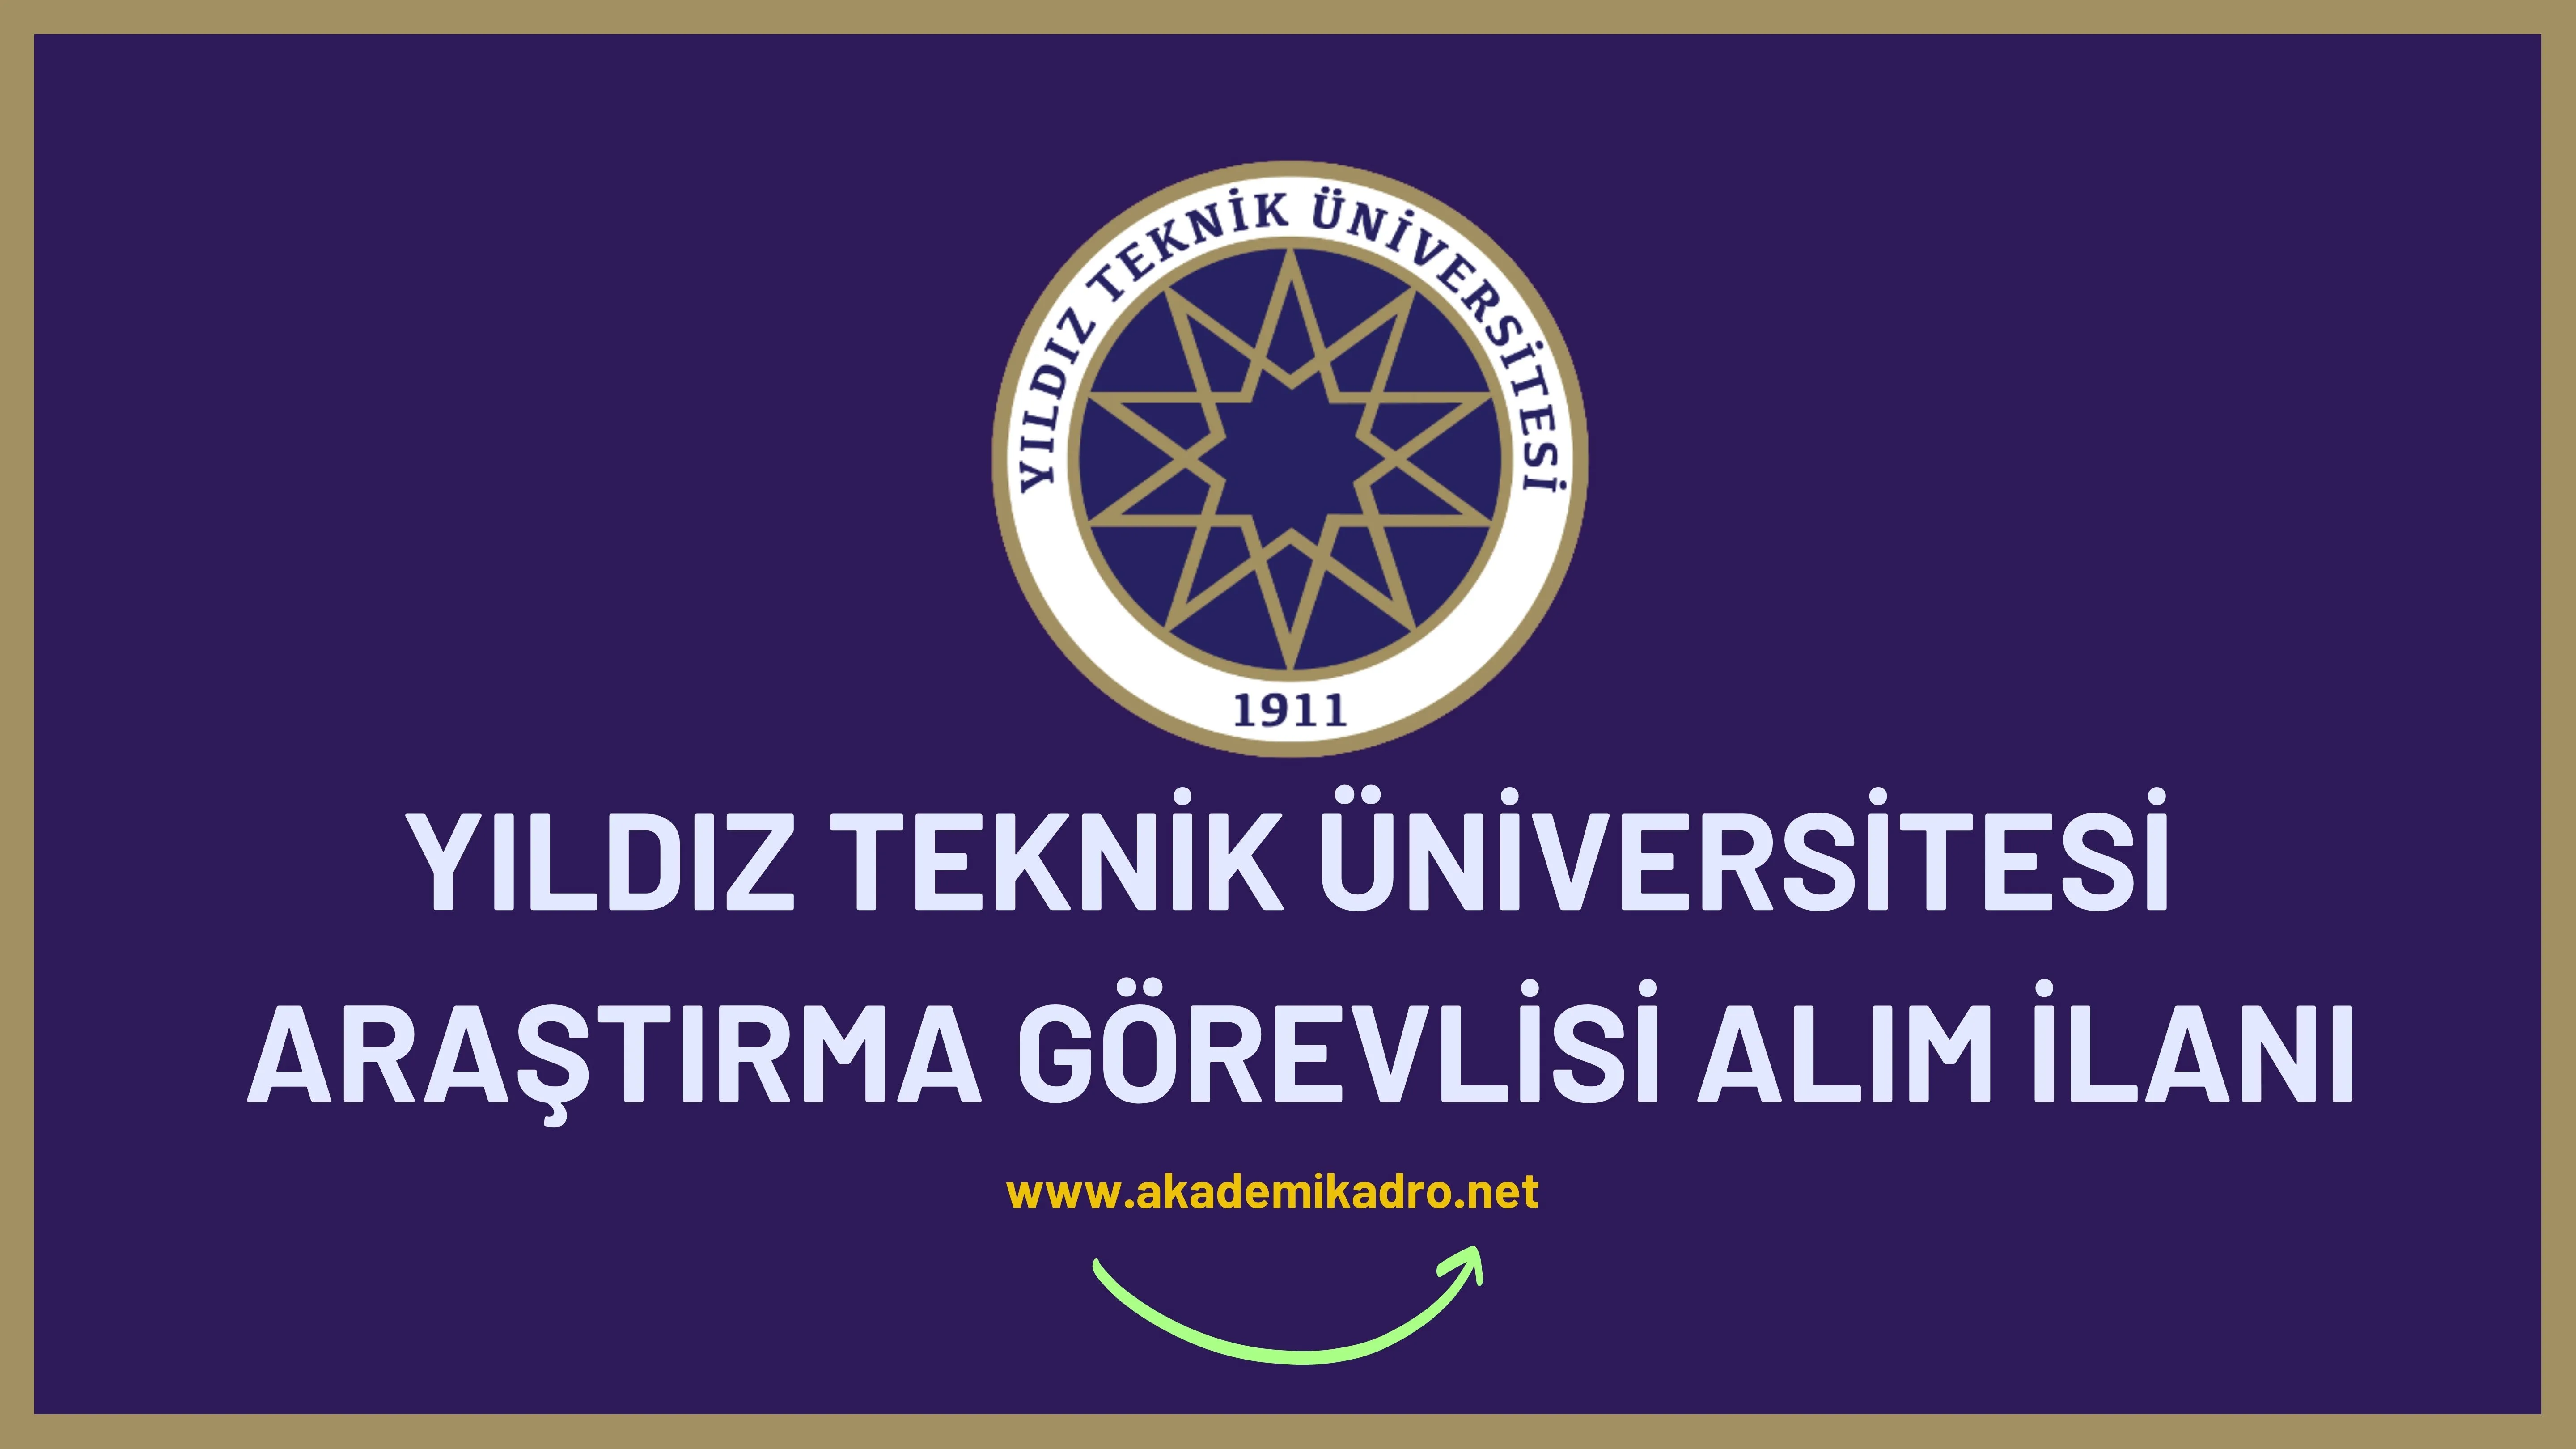 Yıldız Teknik Üniversitesi 32 Araştırma görevlisi ve 26 öğretim üyesi alacaktır.